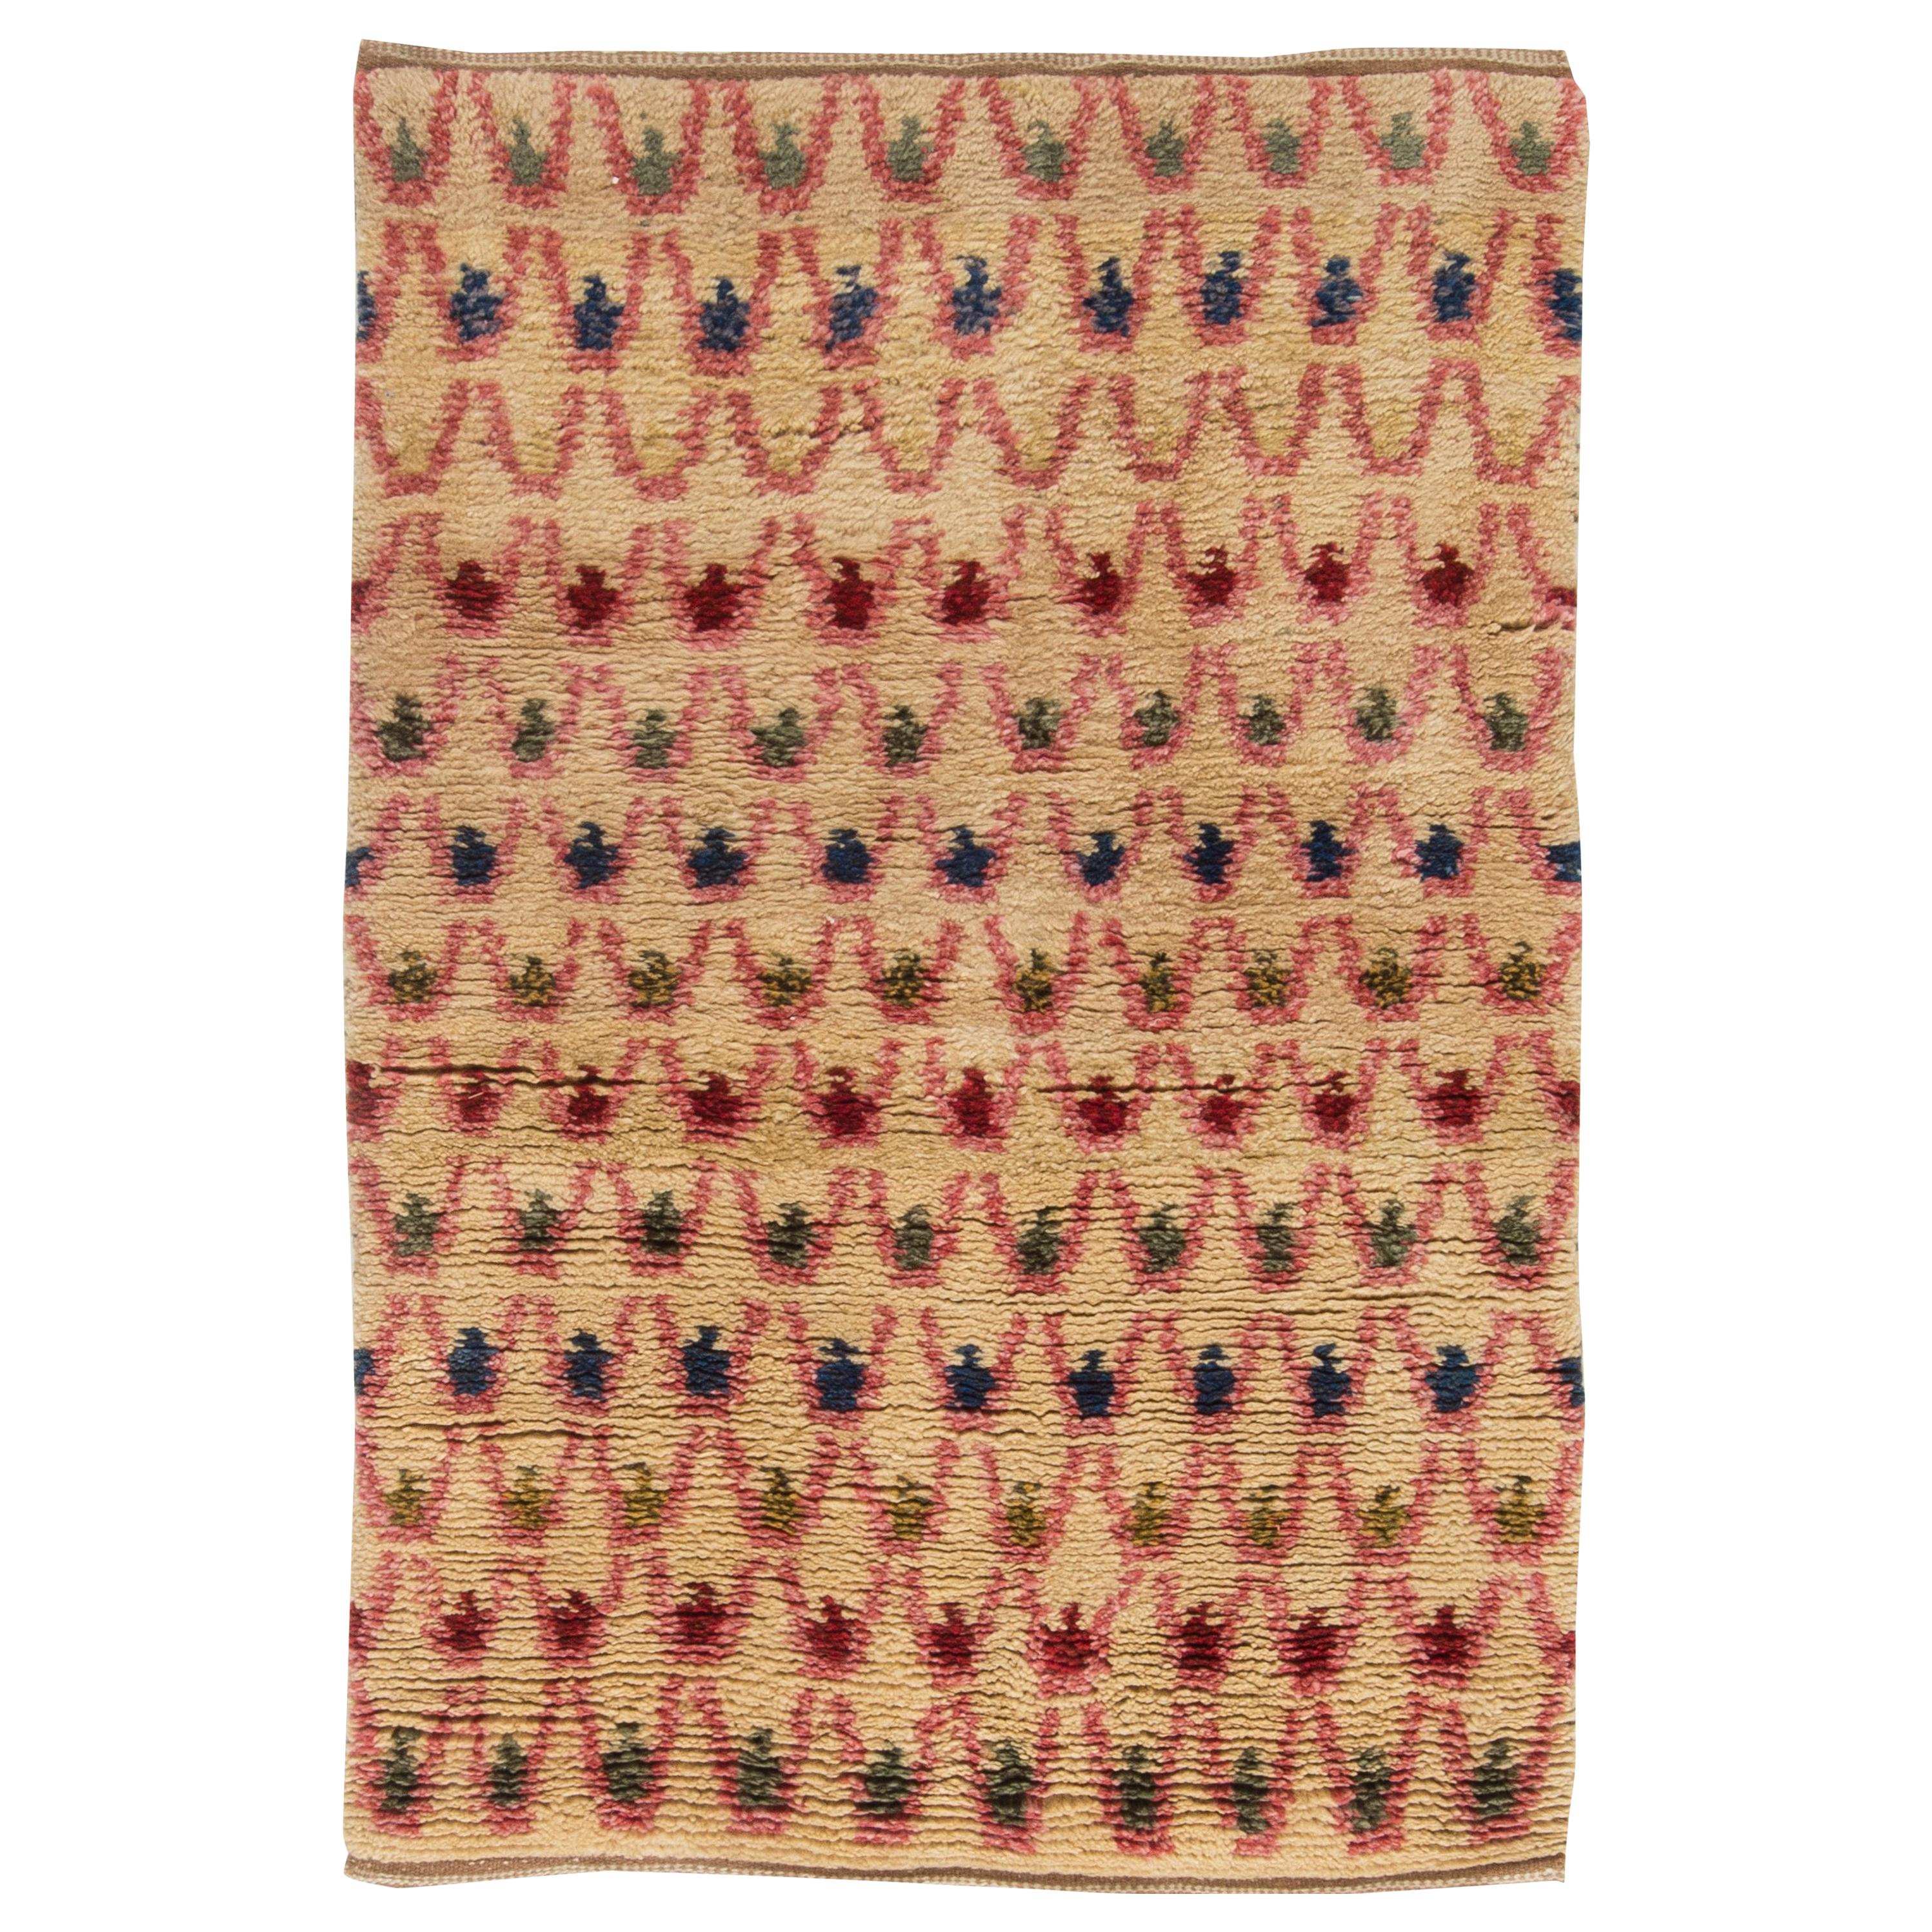 Doris Leslie Blau Collection Rya I Rainbow Handmade Wool Rug